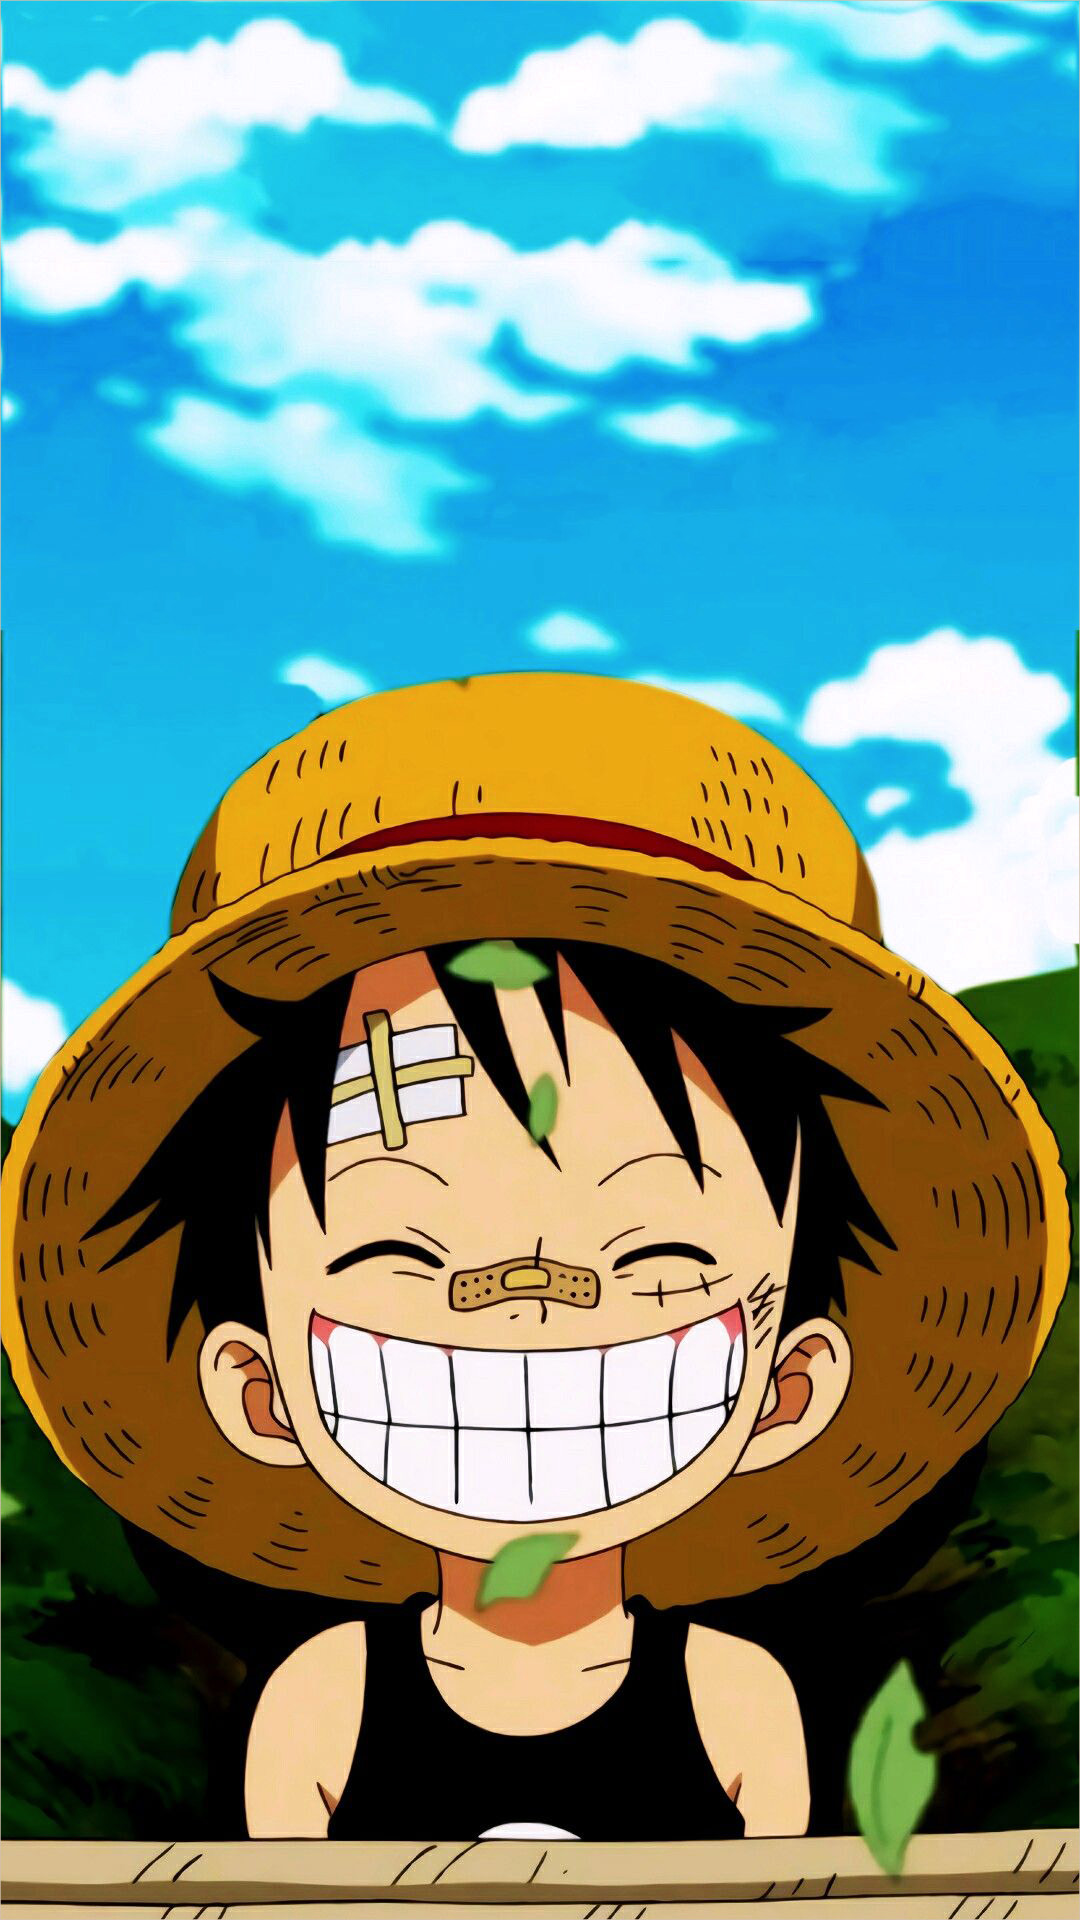 Đừng bỏ lỡ cơ hội cập nhật những hình ảnh đặc sắc nhất của nhân vật Luffy trong bộ truyện One Piece. Hãy sẵn sàng bị thu hút bởi bức ảnh Luffy giúp bạn cảm nhận sự mạnh mẽ, tinh thần phiêu lưu và sự tốt bụng của anh chàng.